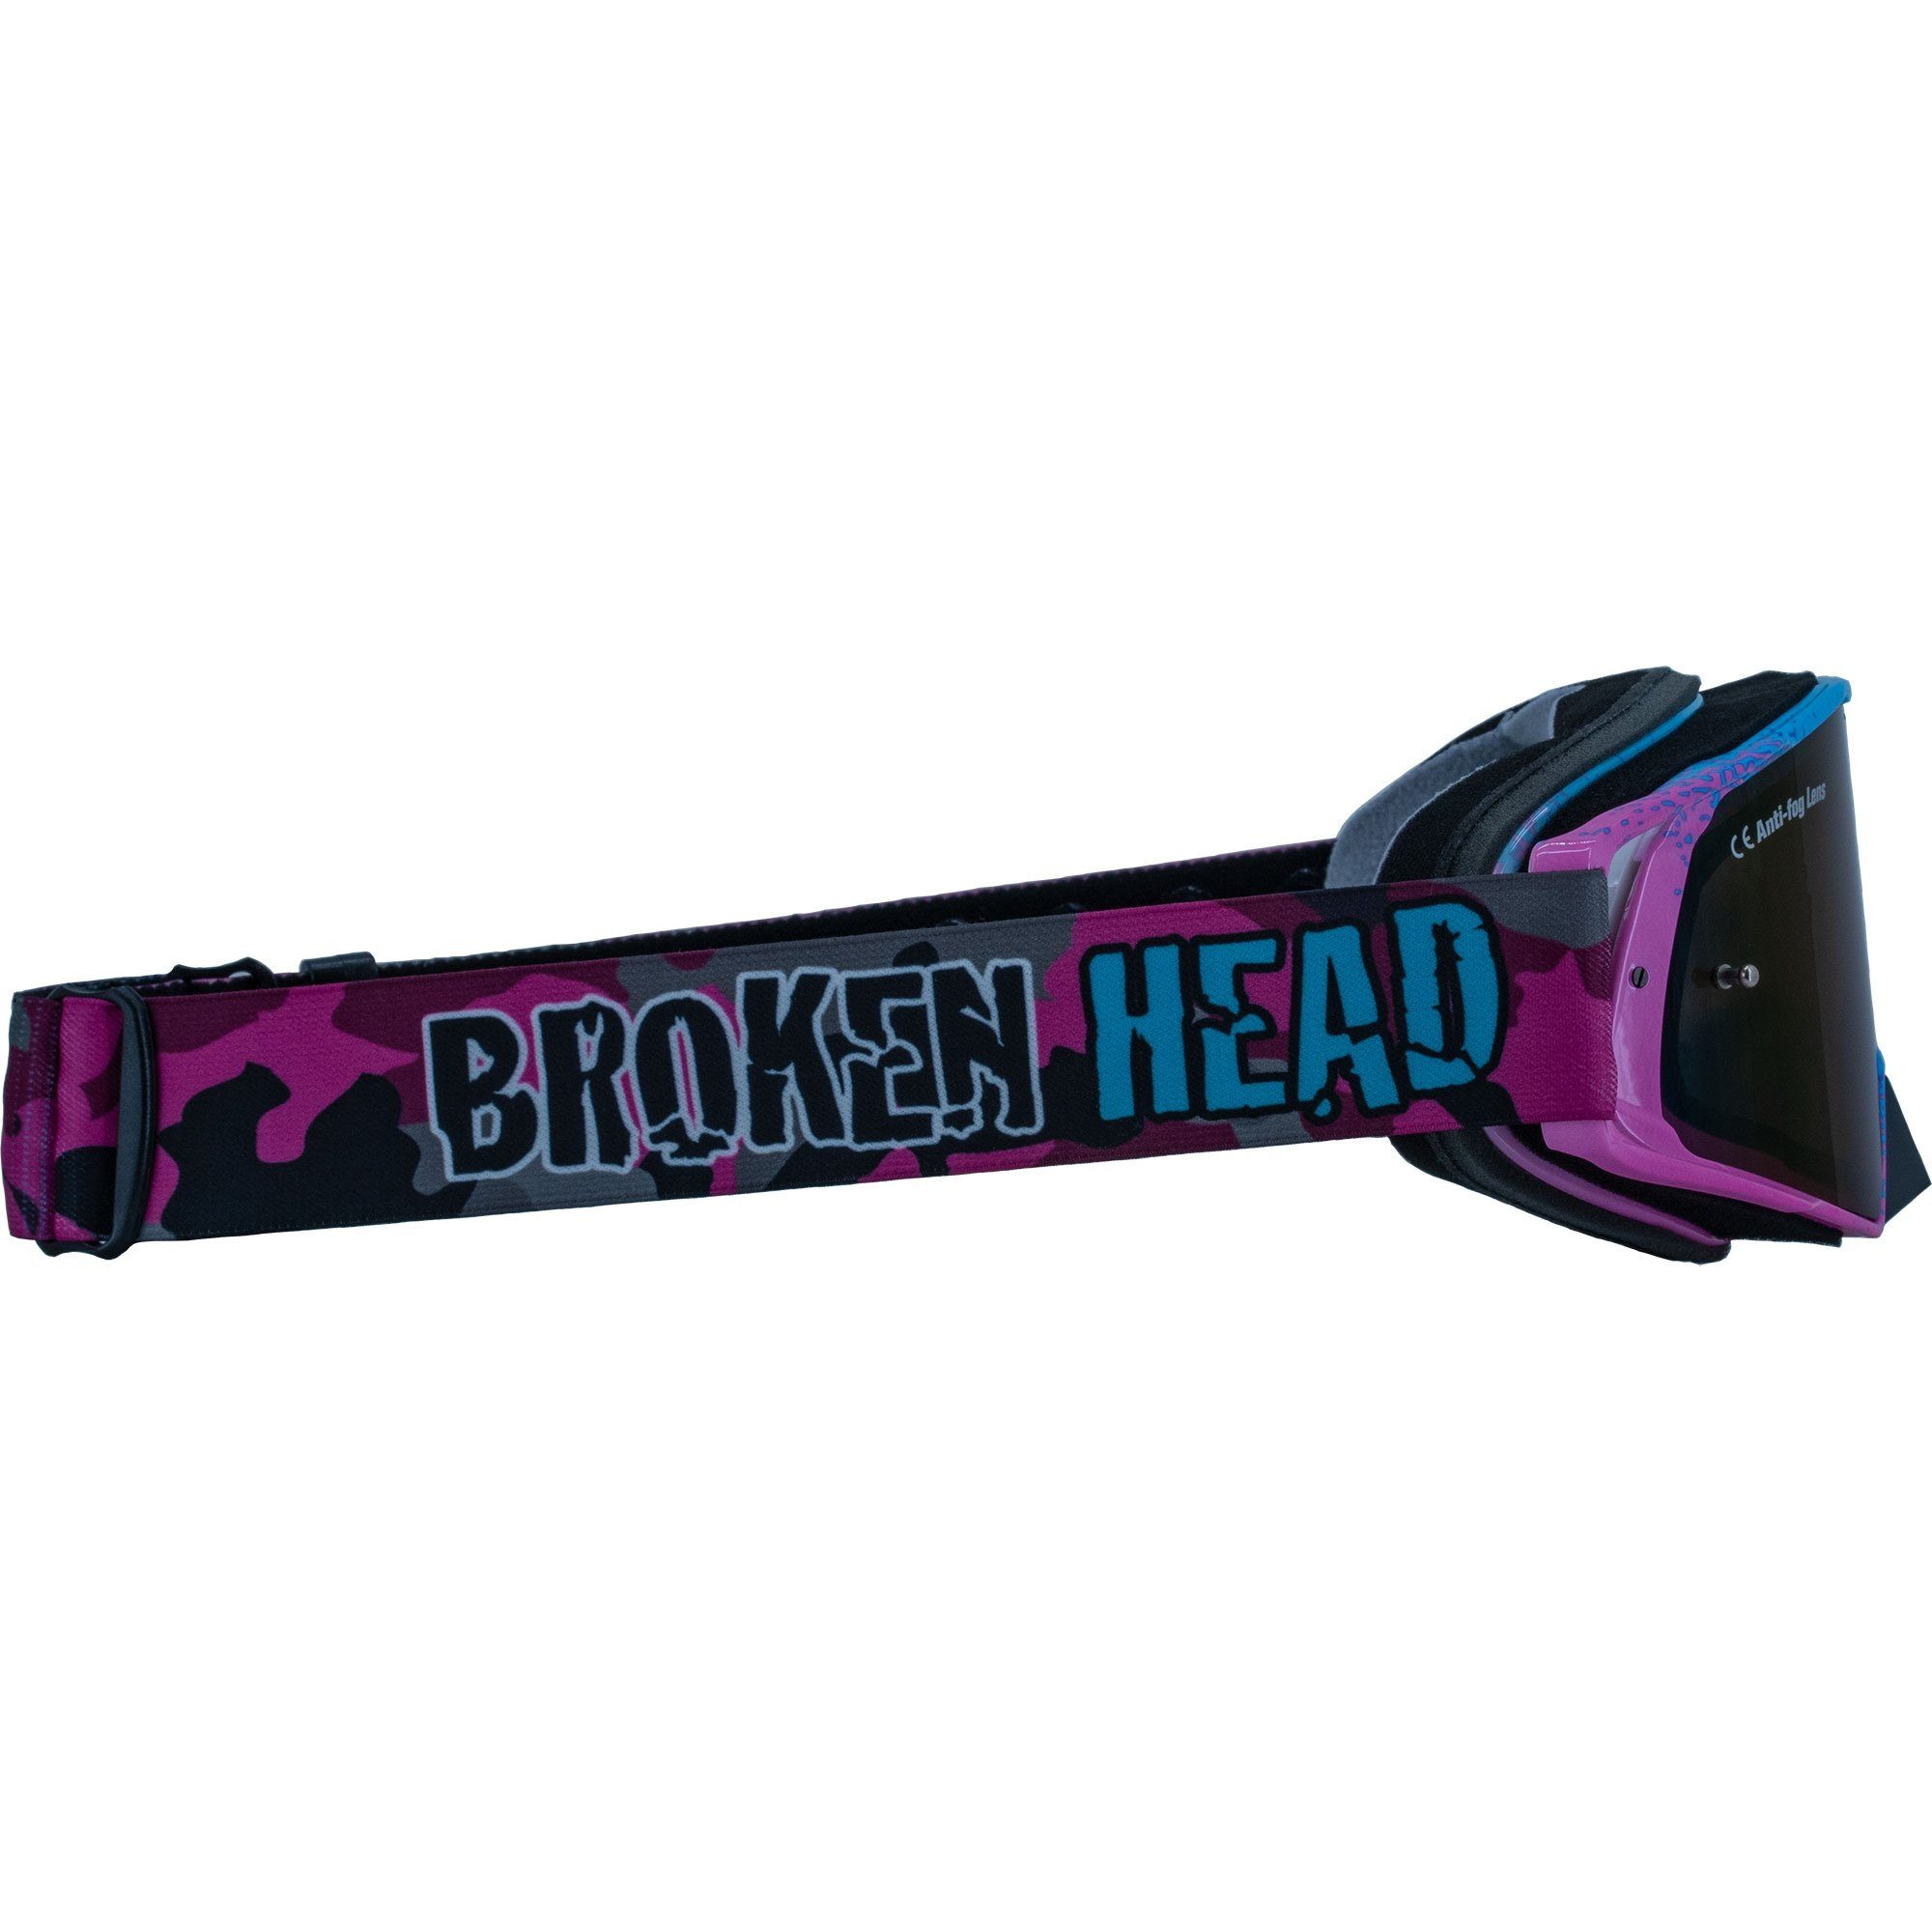 Motorradbrille Größe MX-Regulator Broken verstellbar Head Pink,